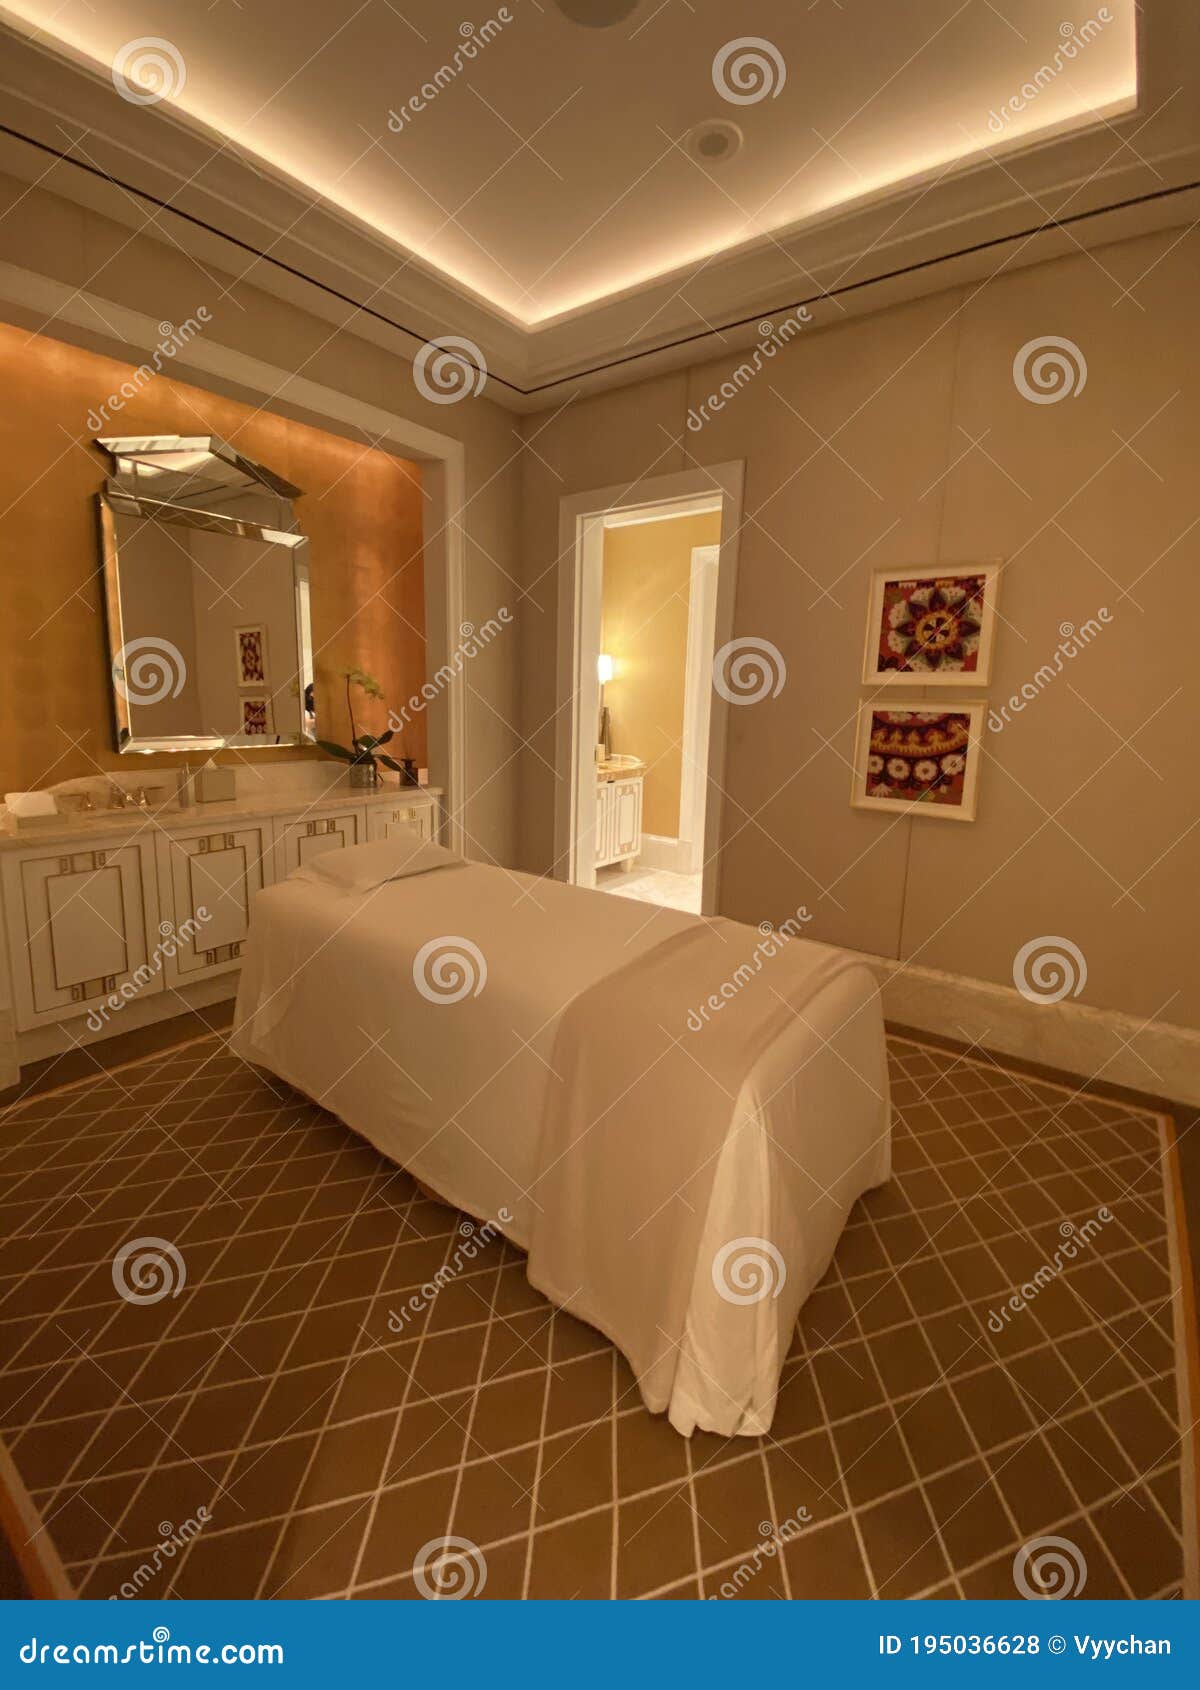 Private Massage Room